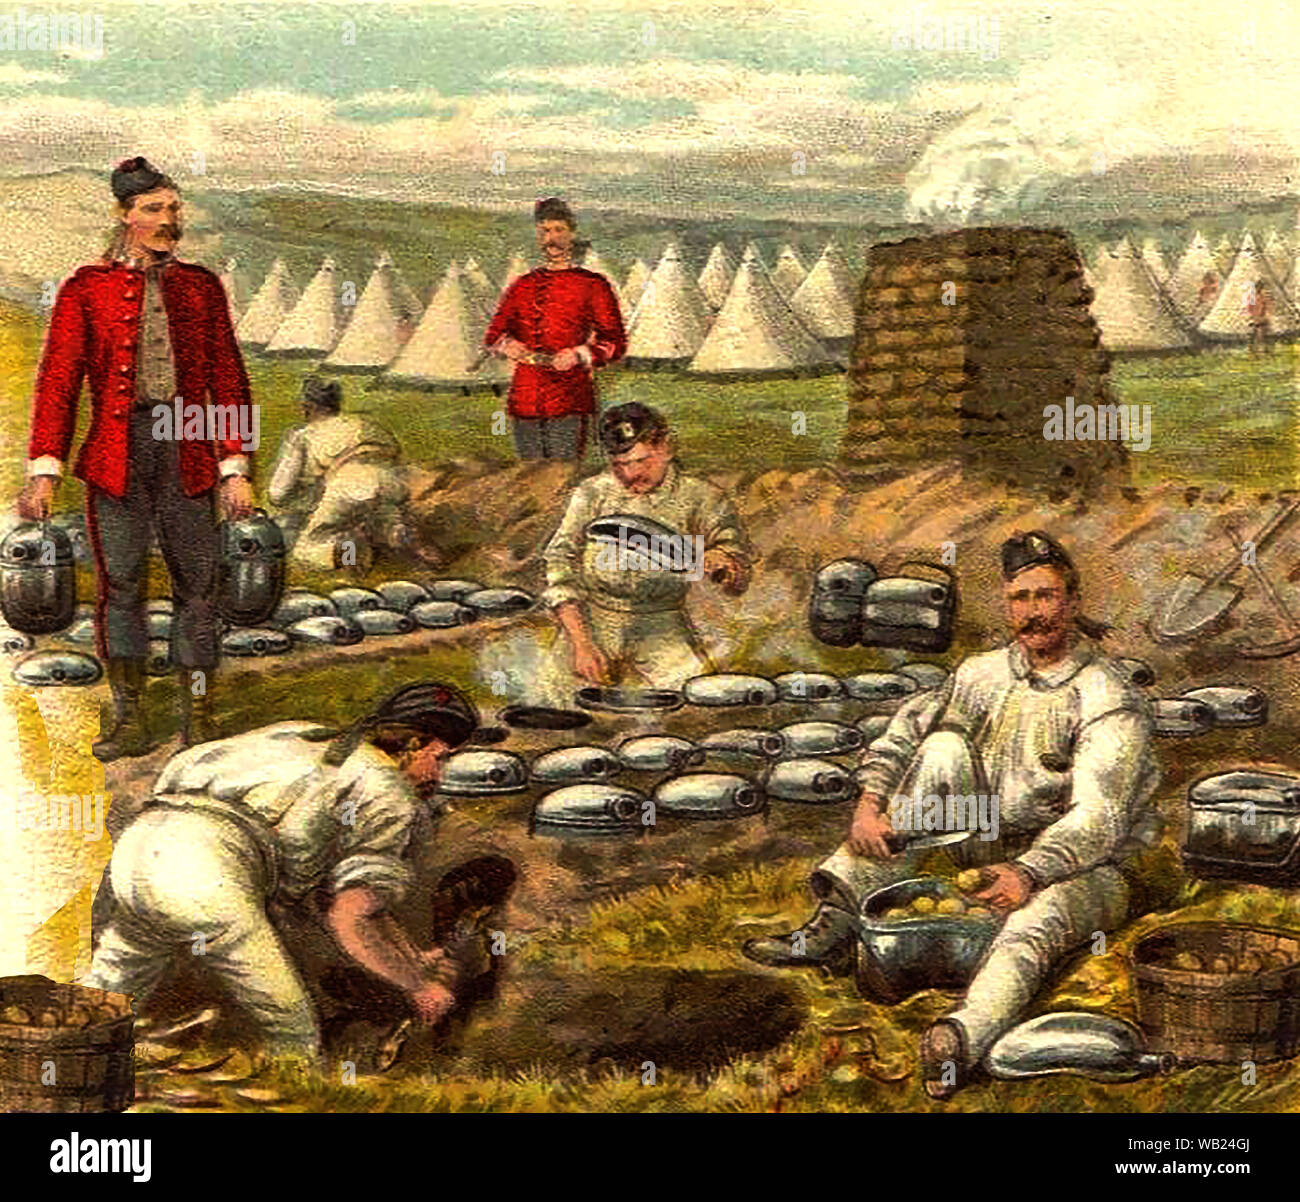 Frühe Postkarte Bild (ca. 1900), das die Lager Küche eines britischen Regiments das Tragen der roten Jacken und Glengarry style Caps. Zelte und ein gemauerter camp Backofen kann im Hintergrund gesehen werden. Stockfoto